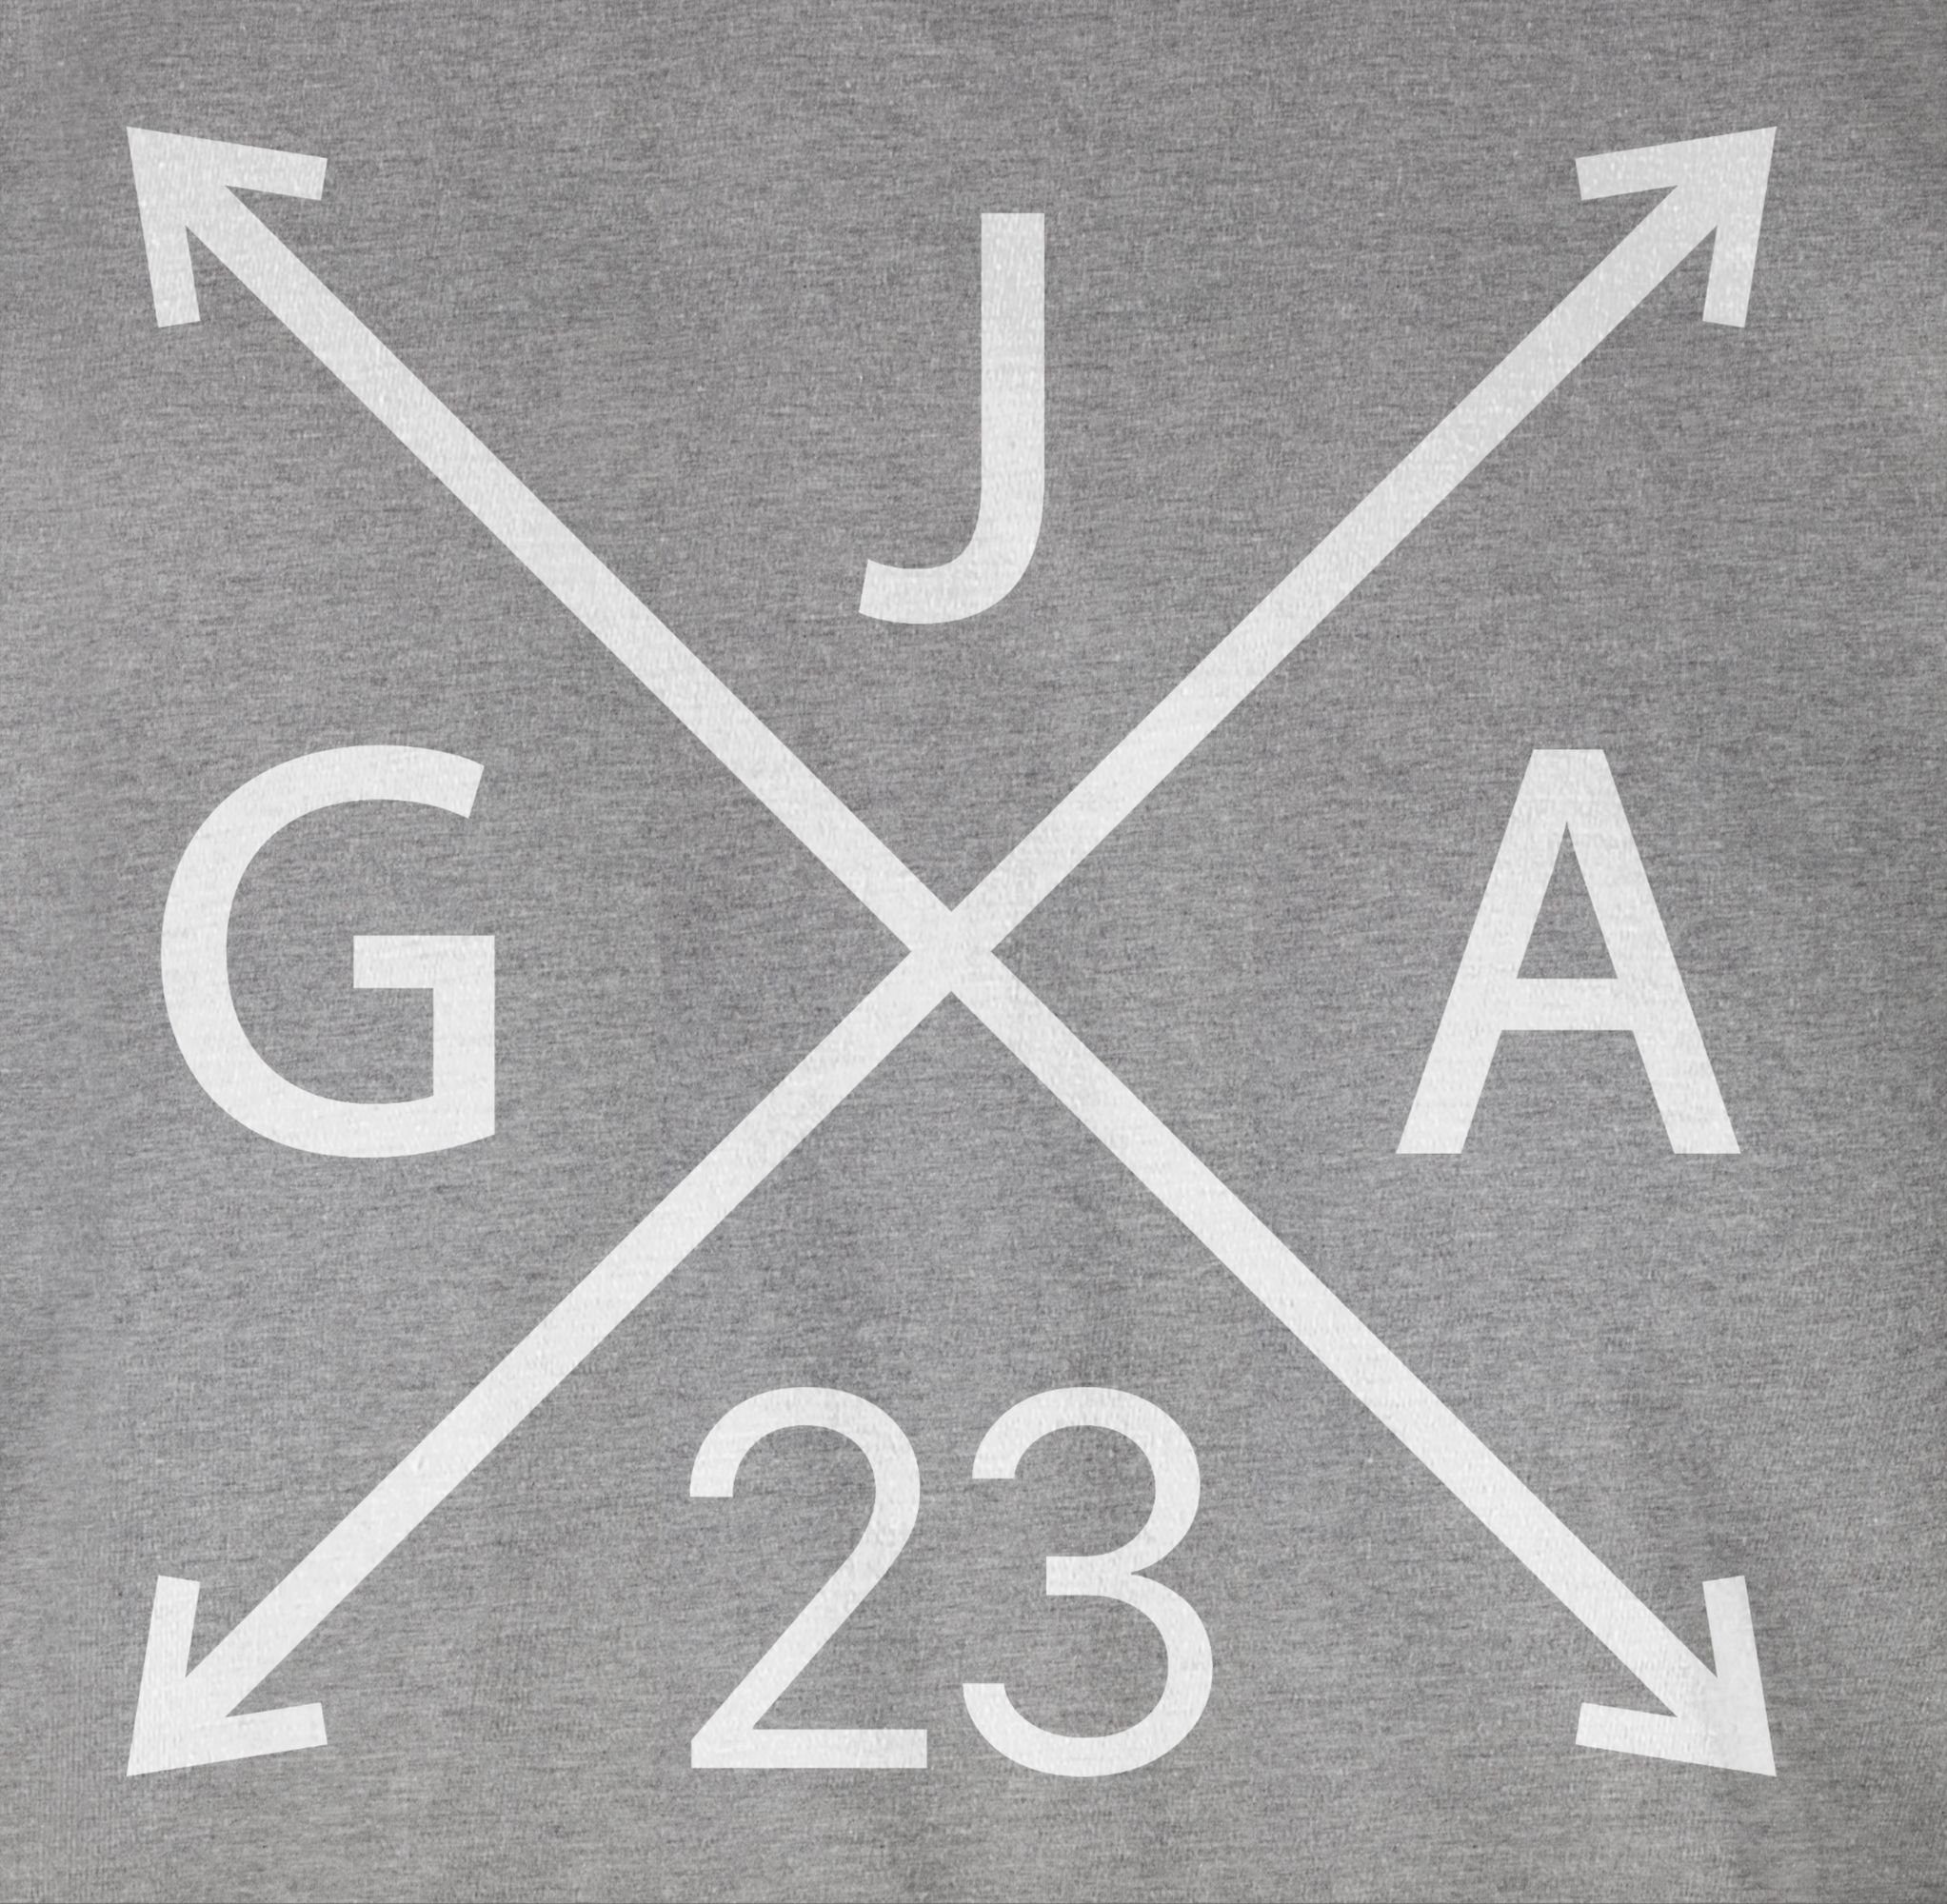 Shirtracer T-Shirt JGA 2023 JGA Männer 03 Grau meliert